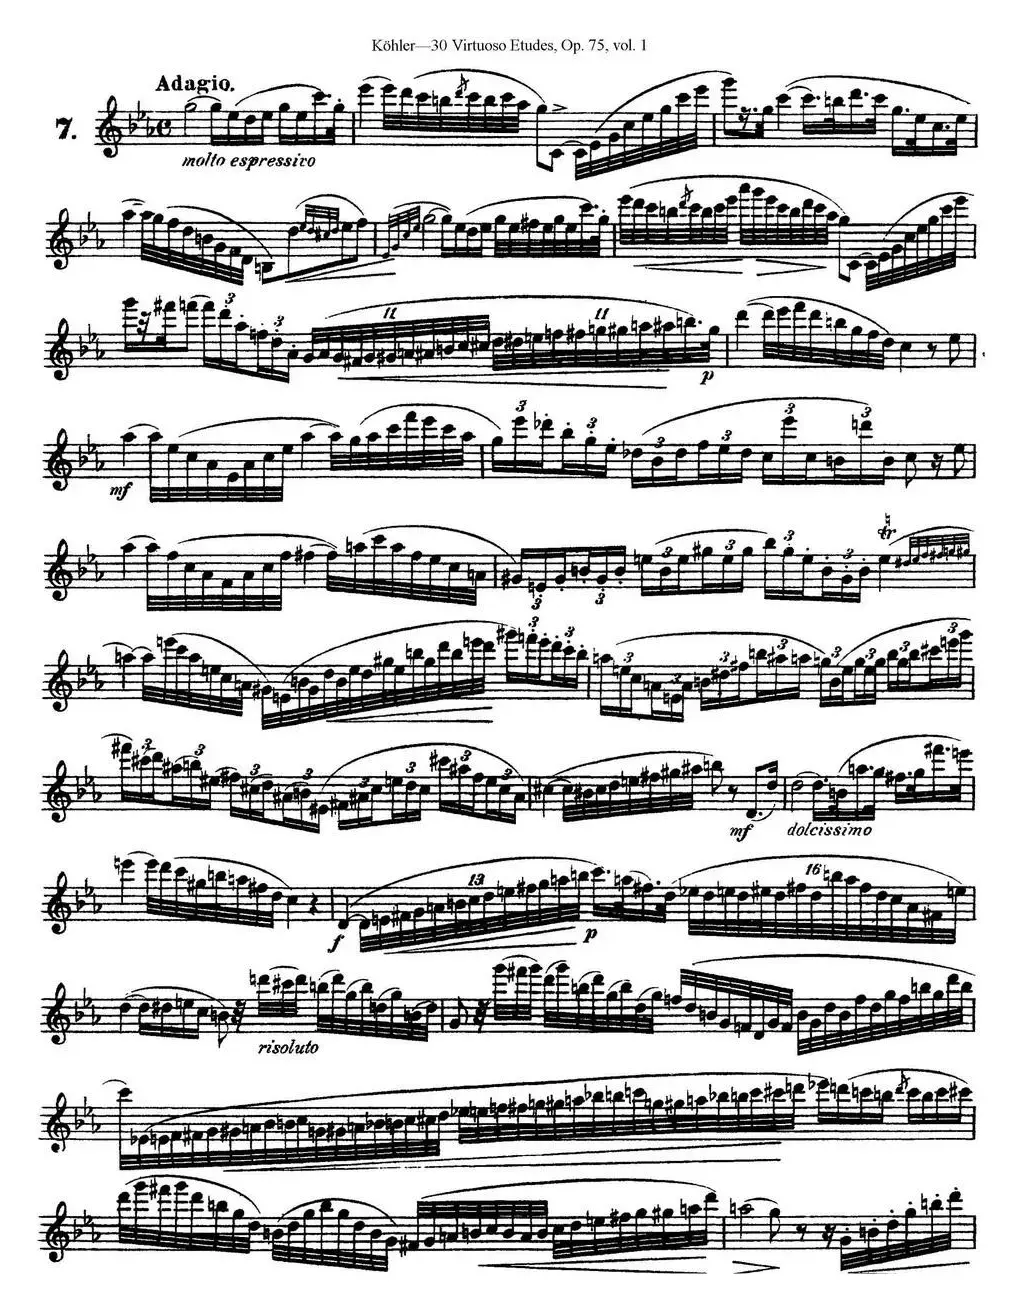 柯勒30首高级长笛练习曲作品75号（NO.7）